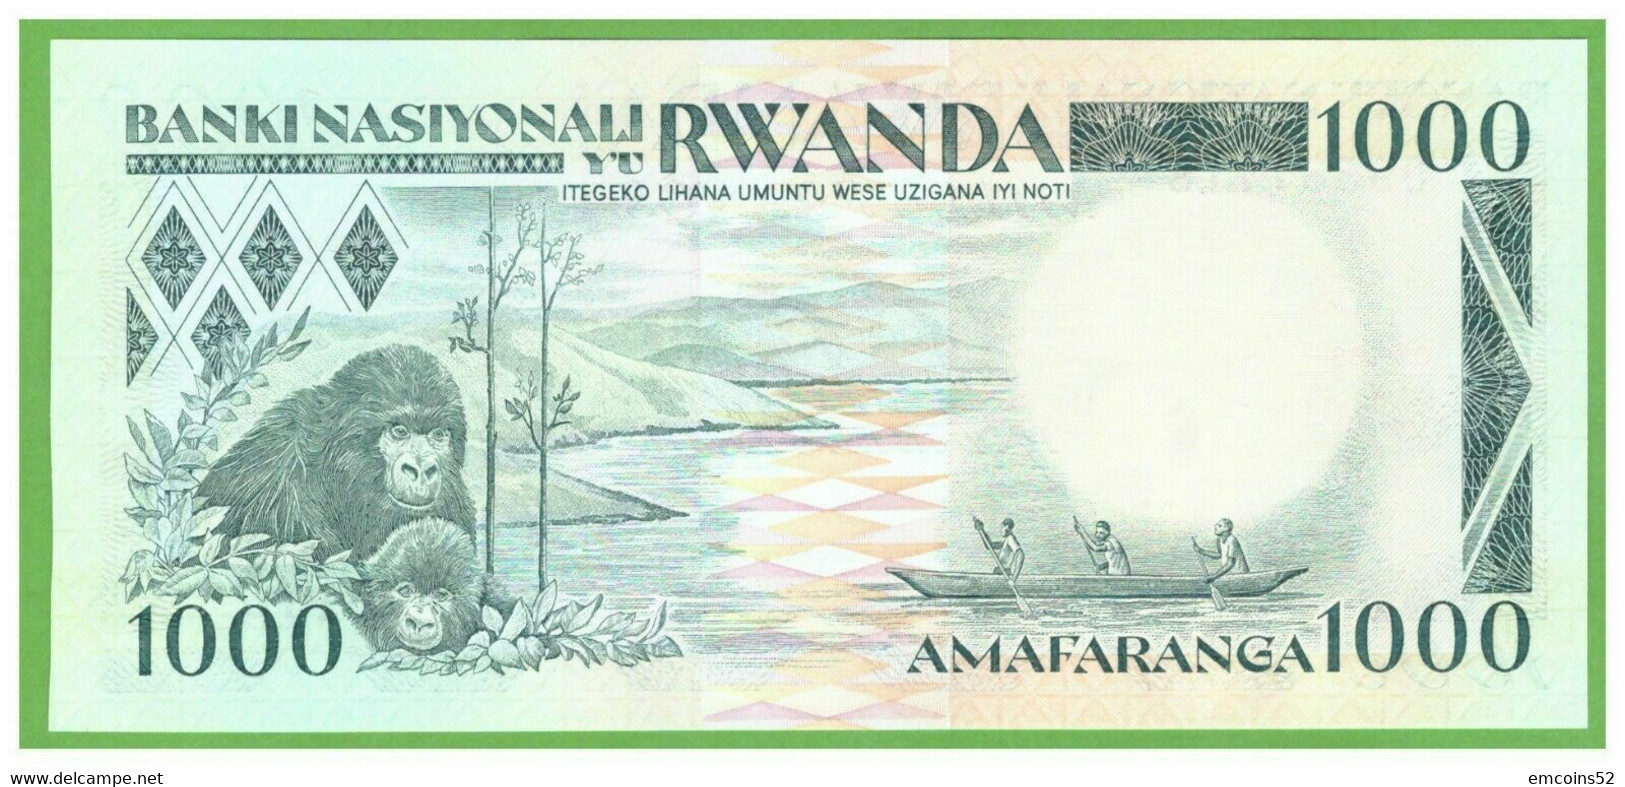 RWANDA 1000 FRANCS 1988  P-21 UNC - Rwanda